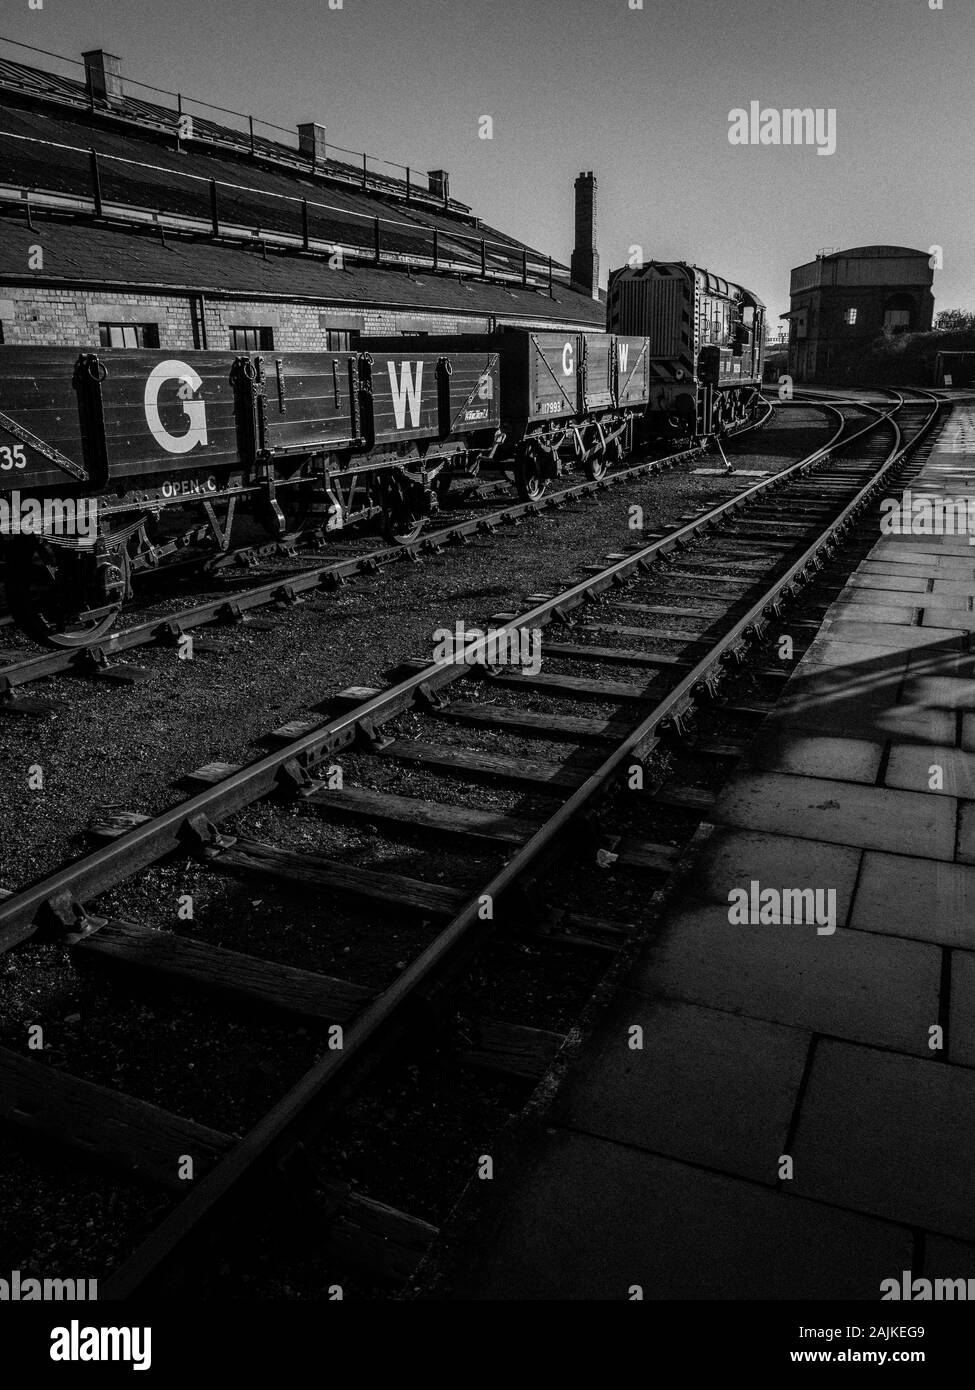 Schwarze und weiße Landschaft der Bahn hof, GWR, GW, Didcot Railway Centre, Didcot, Oxfordshire, England, UK, GB. Stockfoto